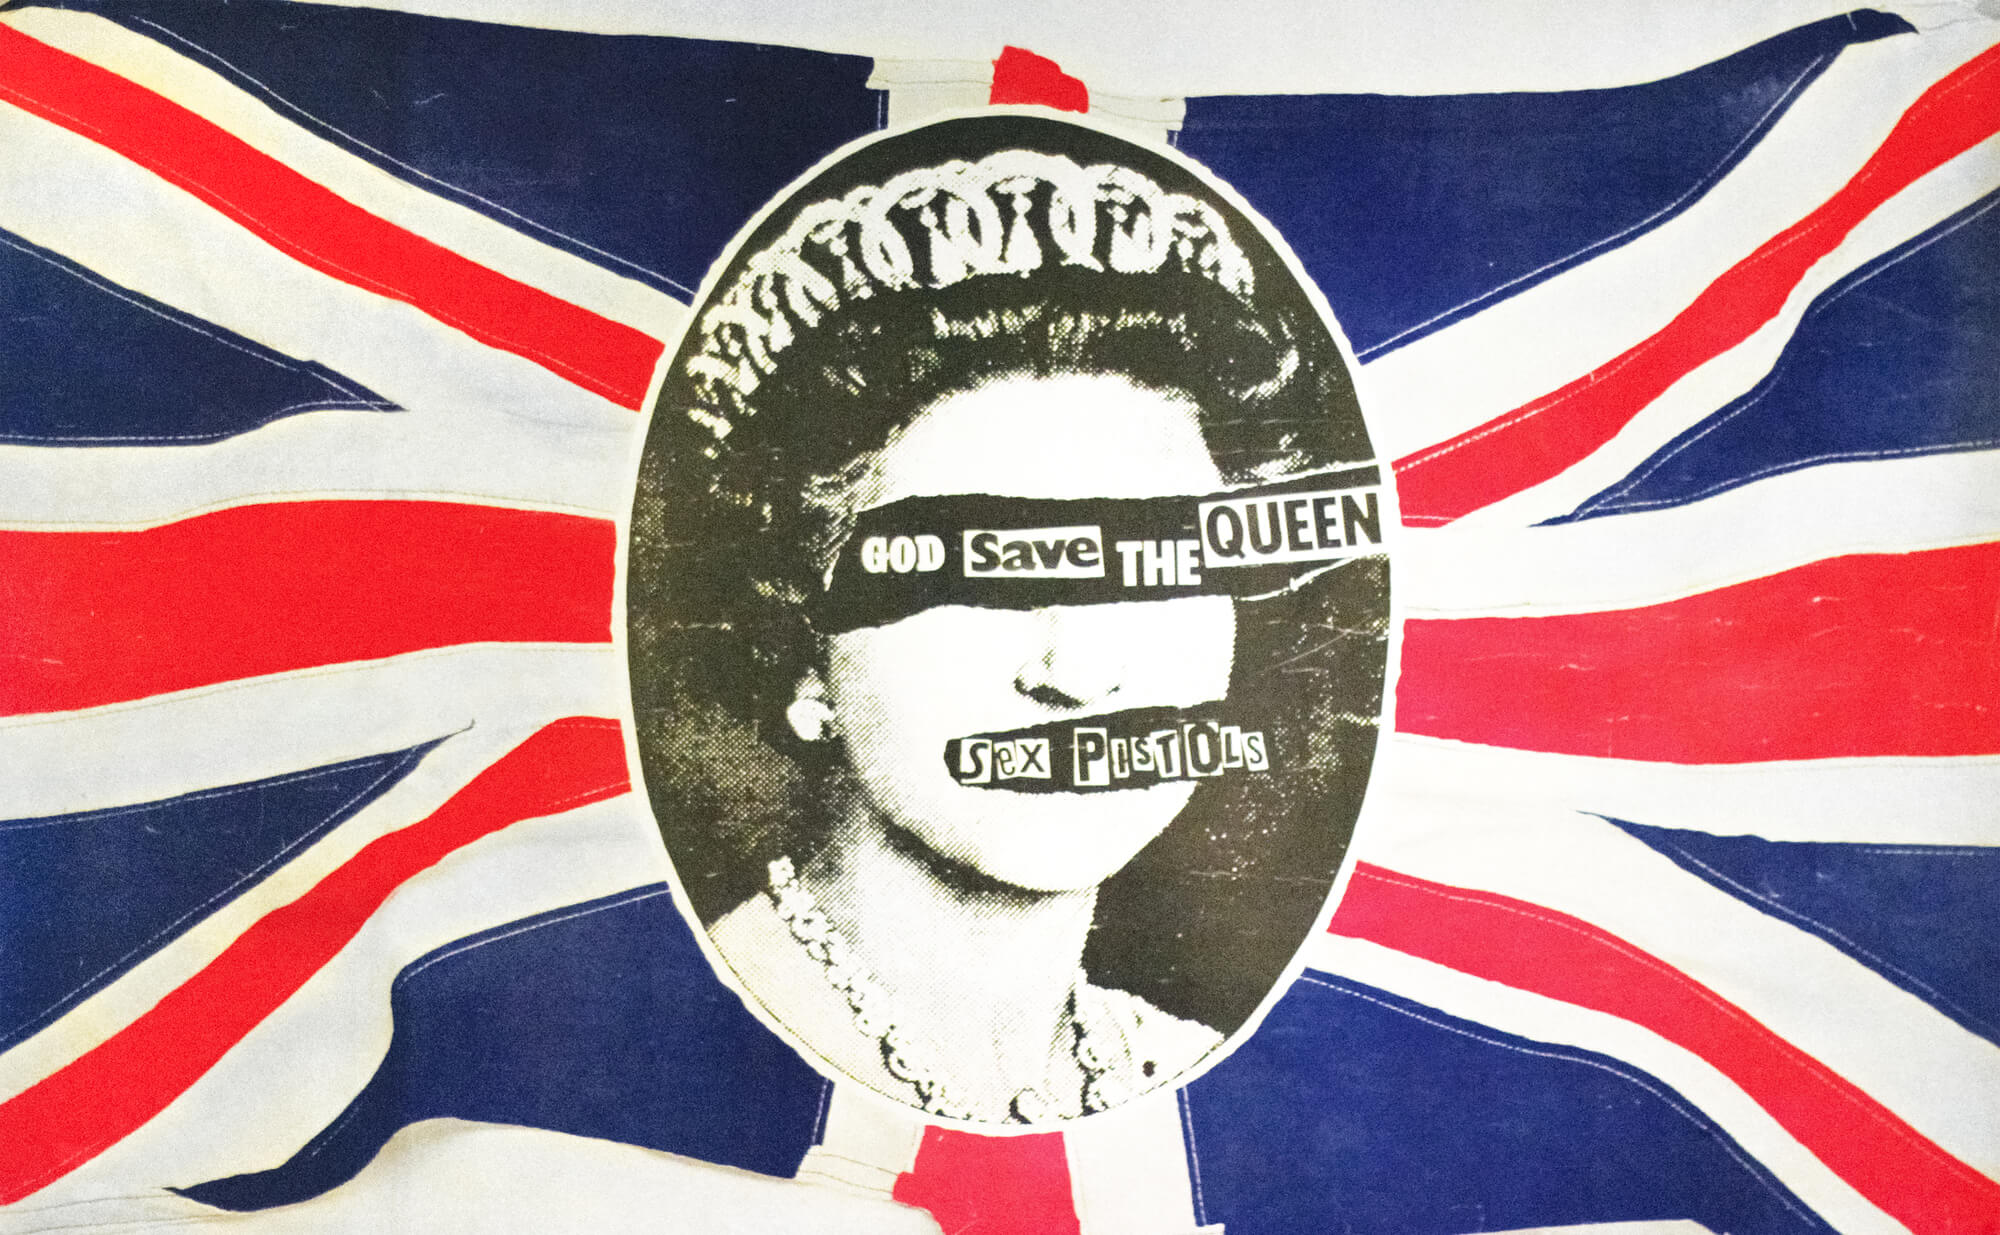 Sex Pistols God Save the Queen Wallpaper Mural | Wallsauce NZ